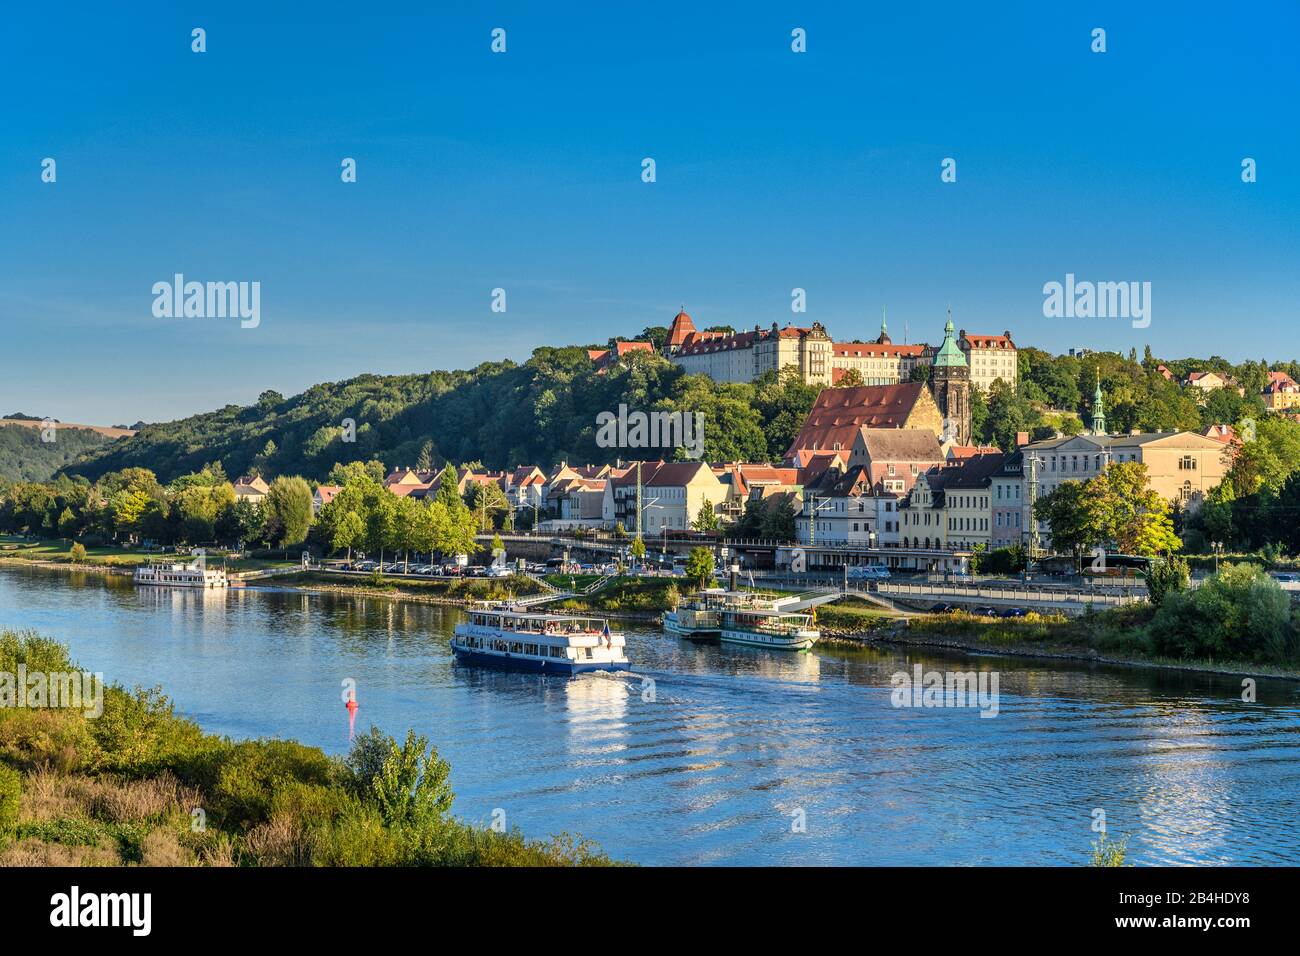 Deutschland, Sachsen, Sächsische Schweiz, Pirna, Elbe mit Altstadt und Schloss Sonnenstein, Blick von der Elbbrücke Stock Photo